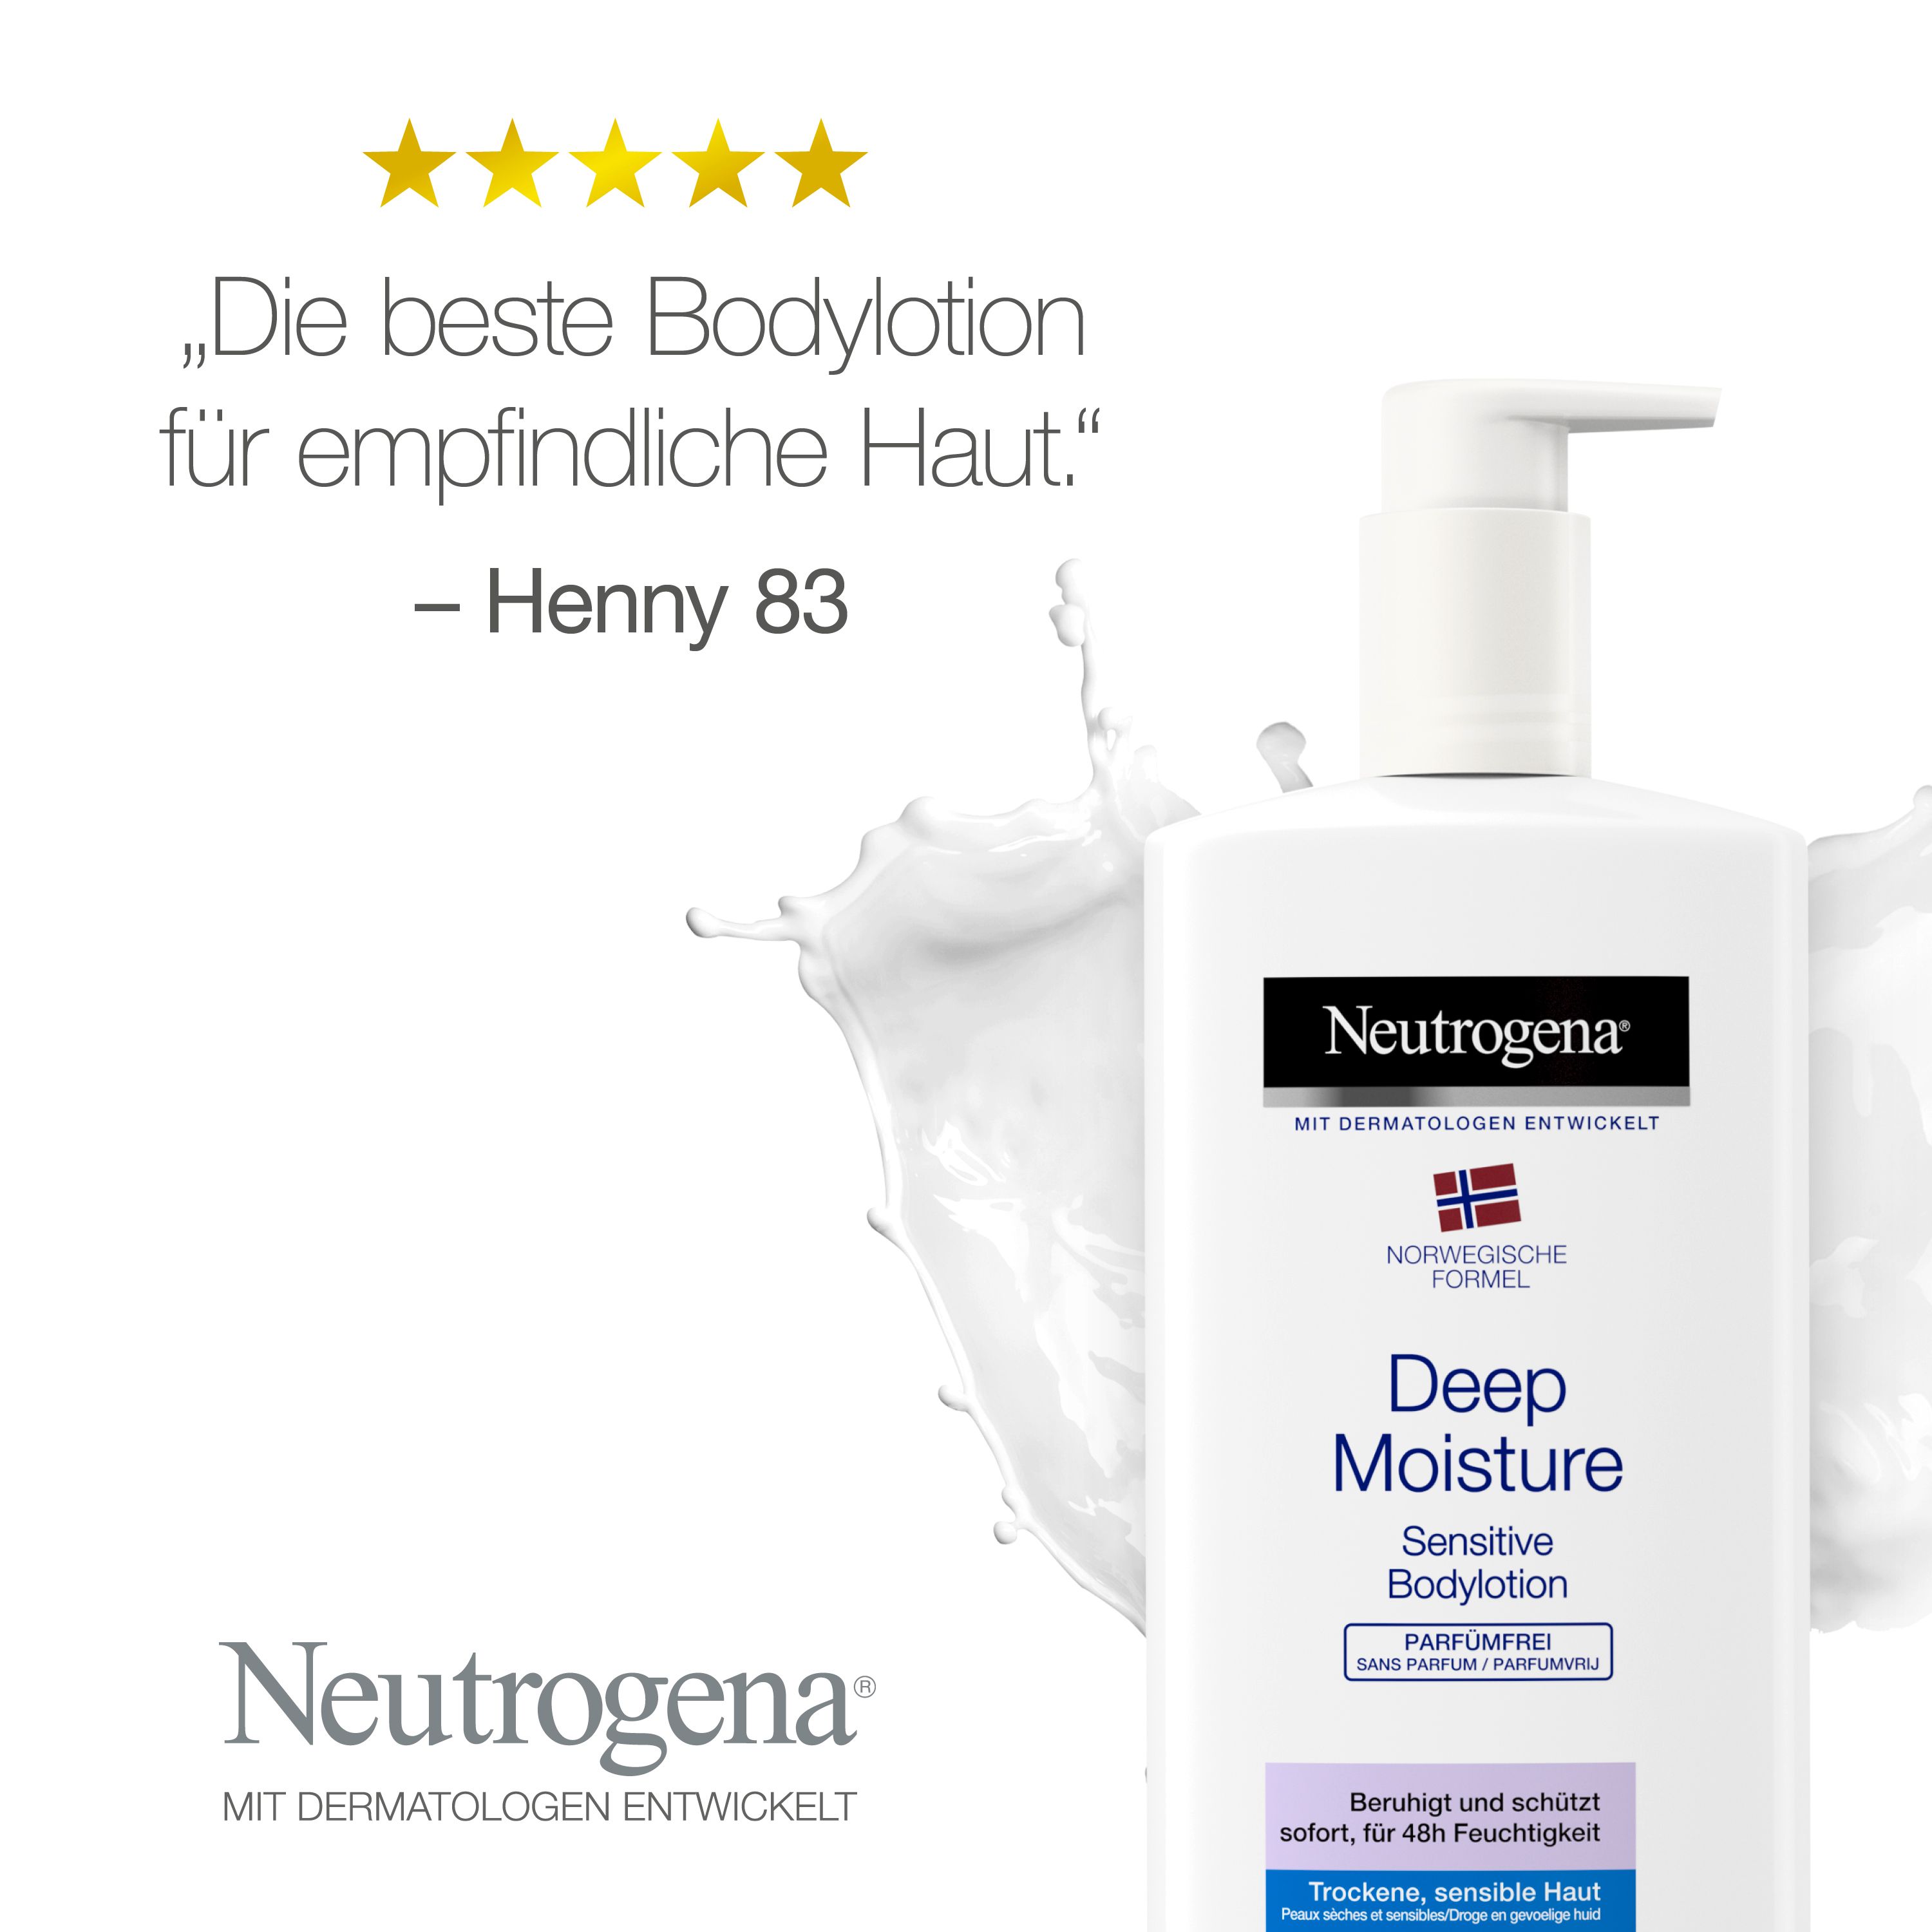 Neutrogena® Norwegische Formel Deep Moisture Bodylotion Sensitive